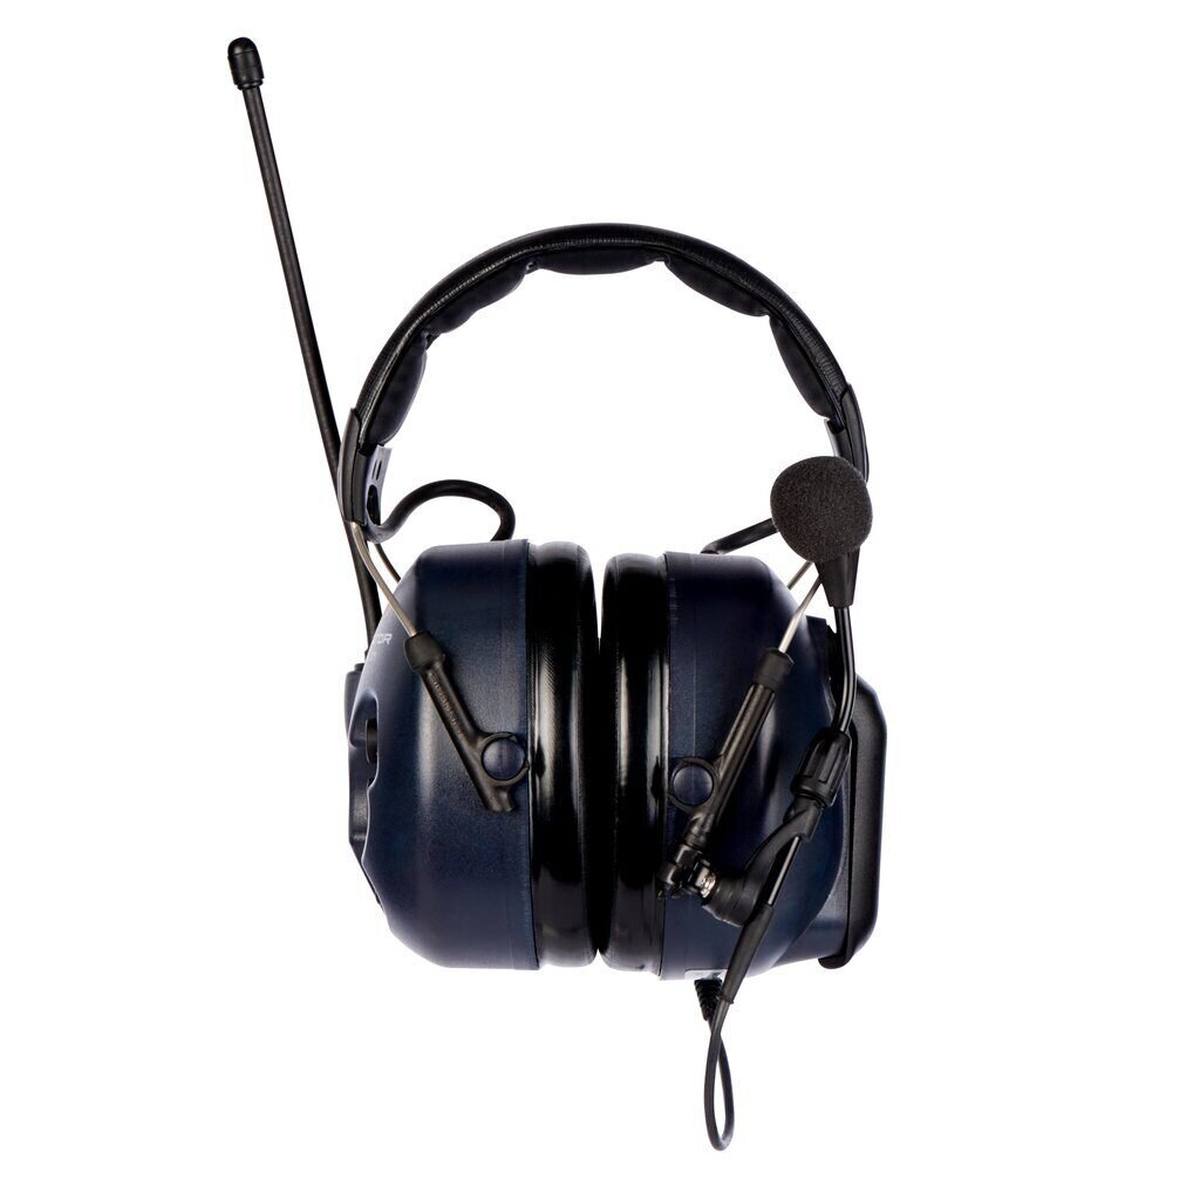 3M LiteCom mit Kopfbügel, eingebautes PMR 446 Funkgerät, inkl. Boom Mikrofon, SNR = 32 dB, blau